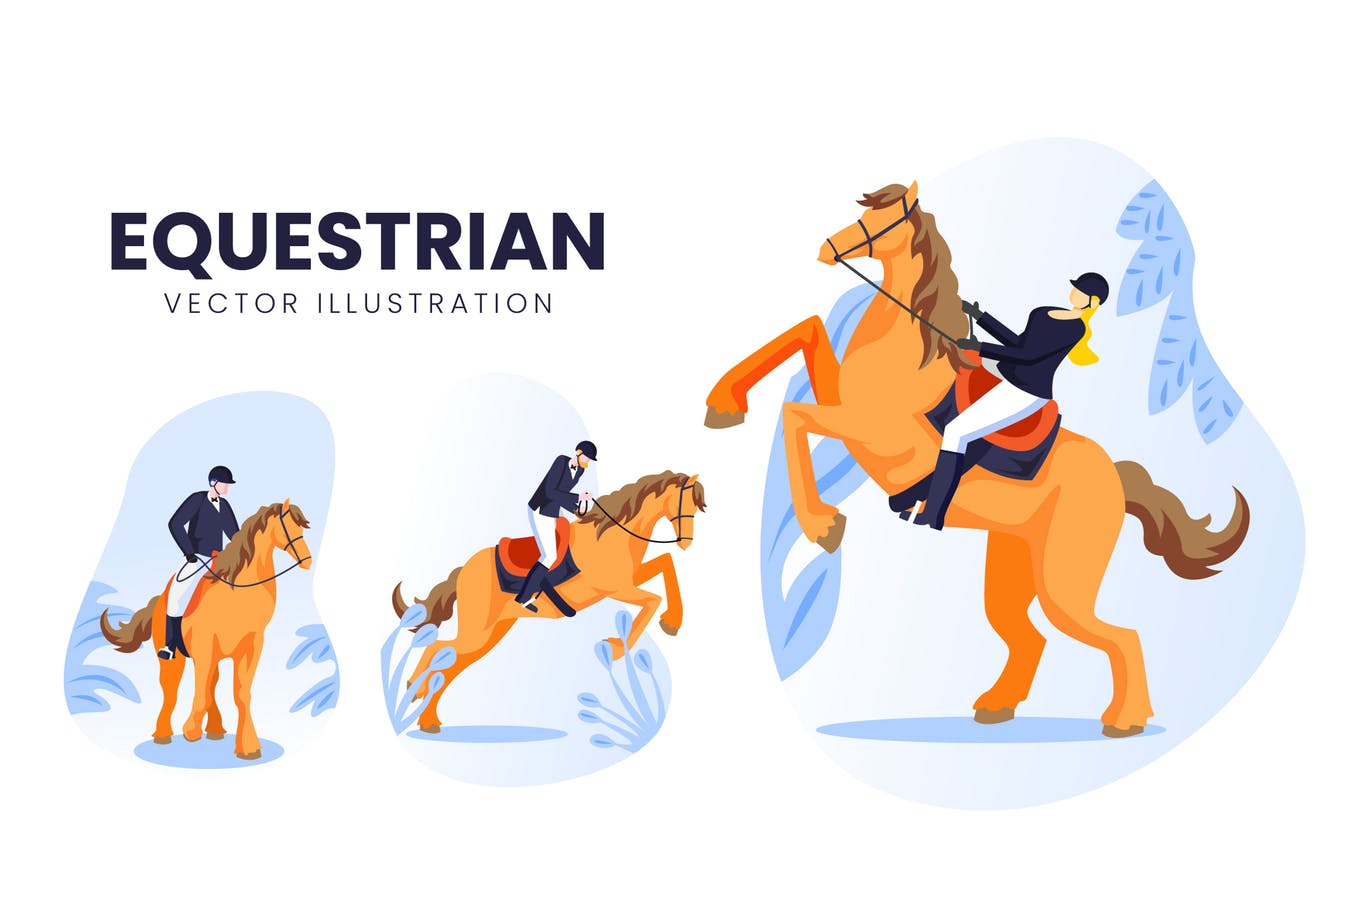 马术运动员人物形象第一素材精选手绘插画矢量素材 Equestrian Athlete Vector Character Set插图